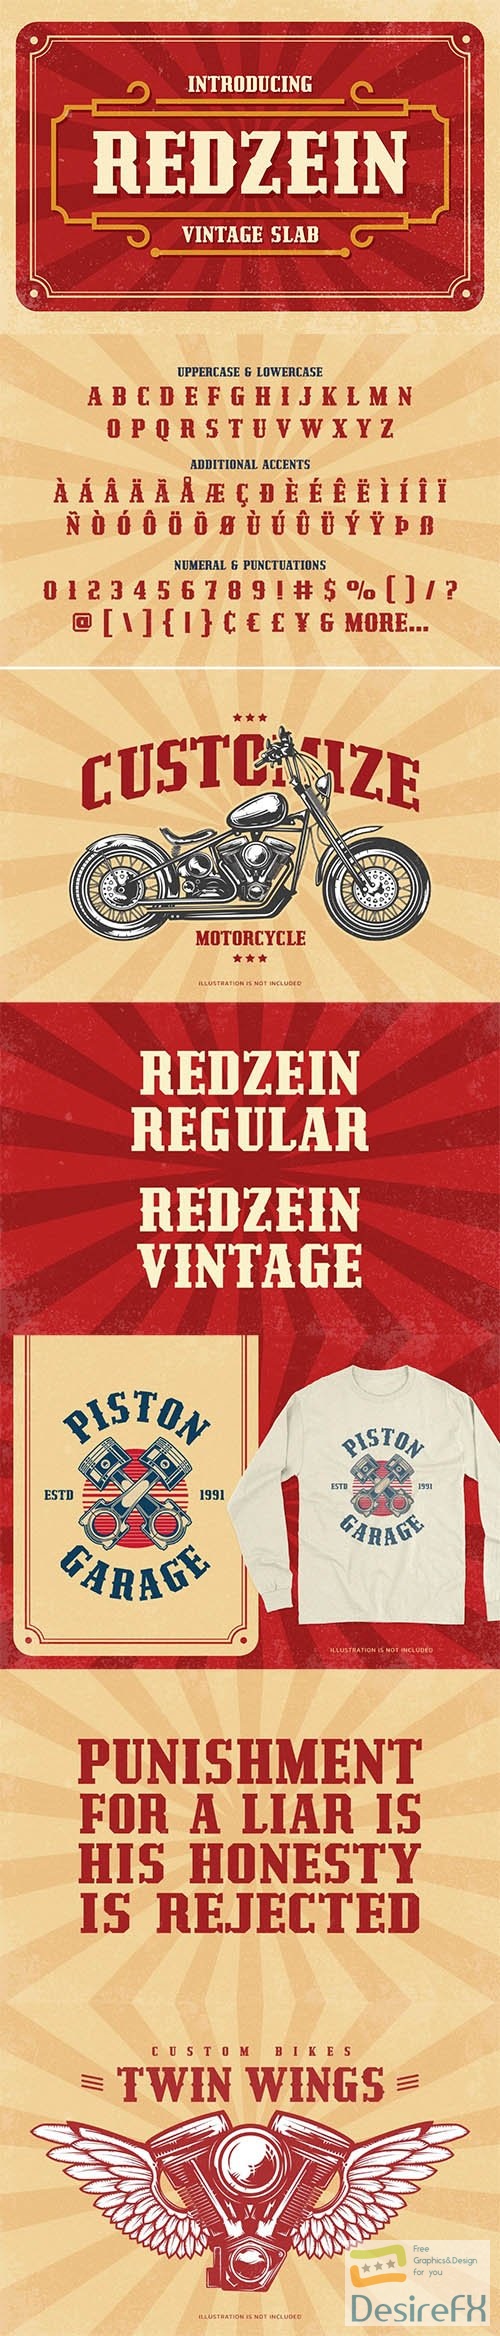 Redzein - Vintage Slab